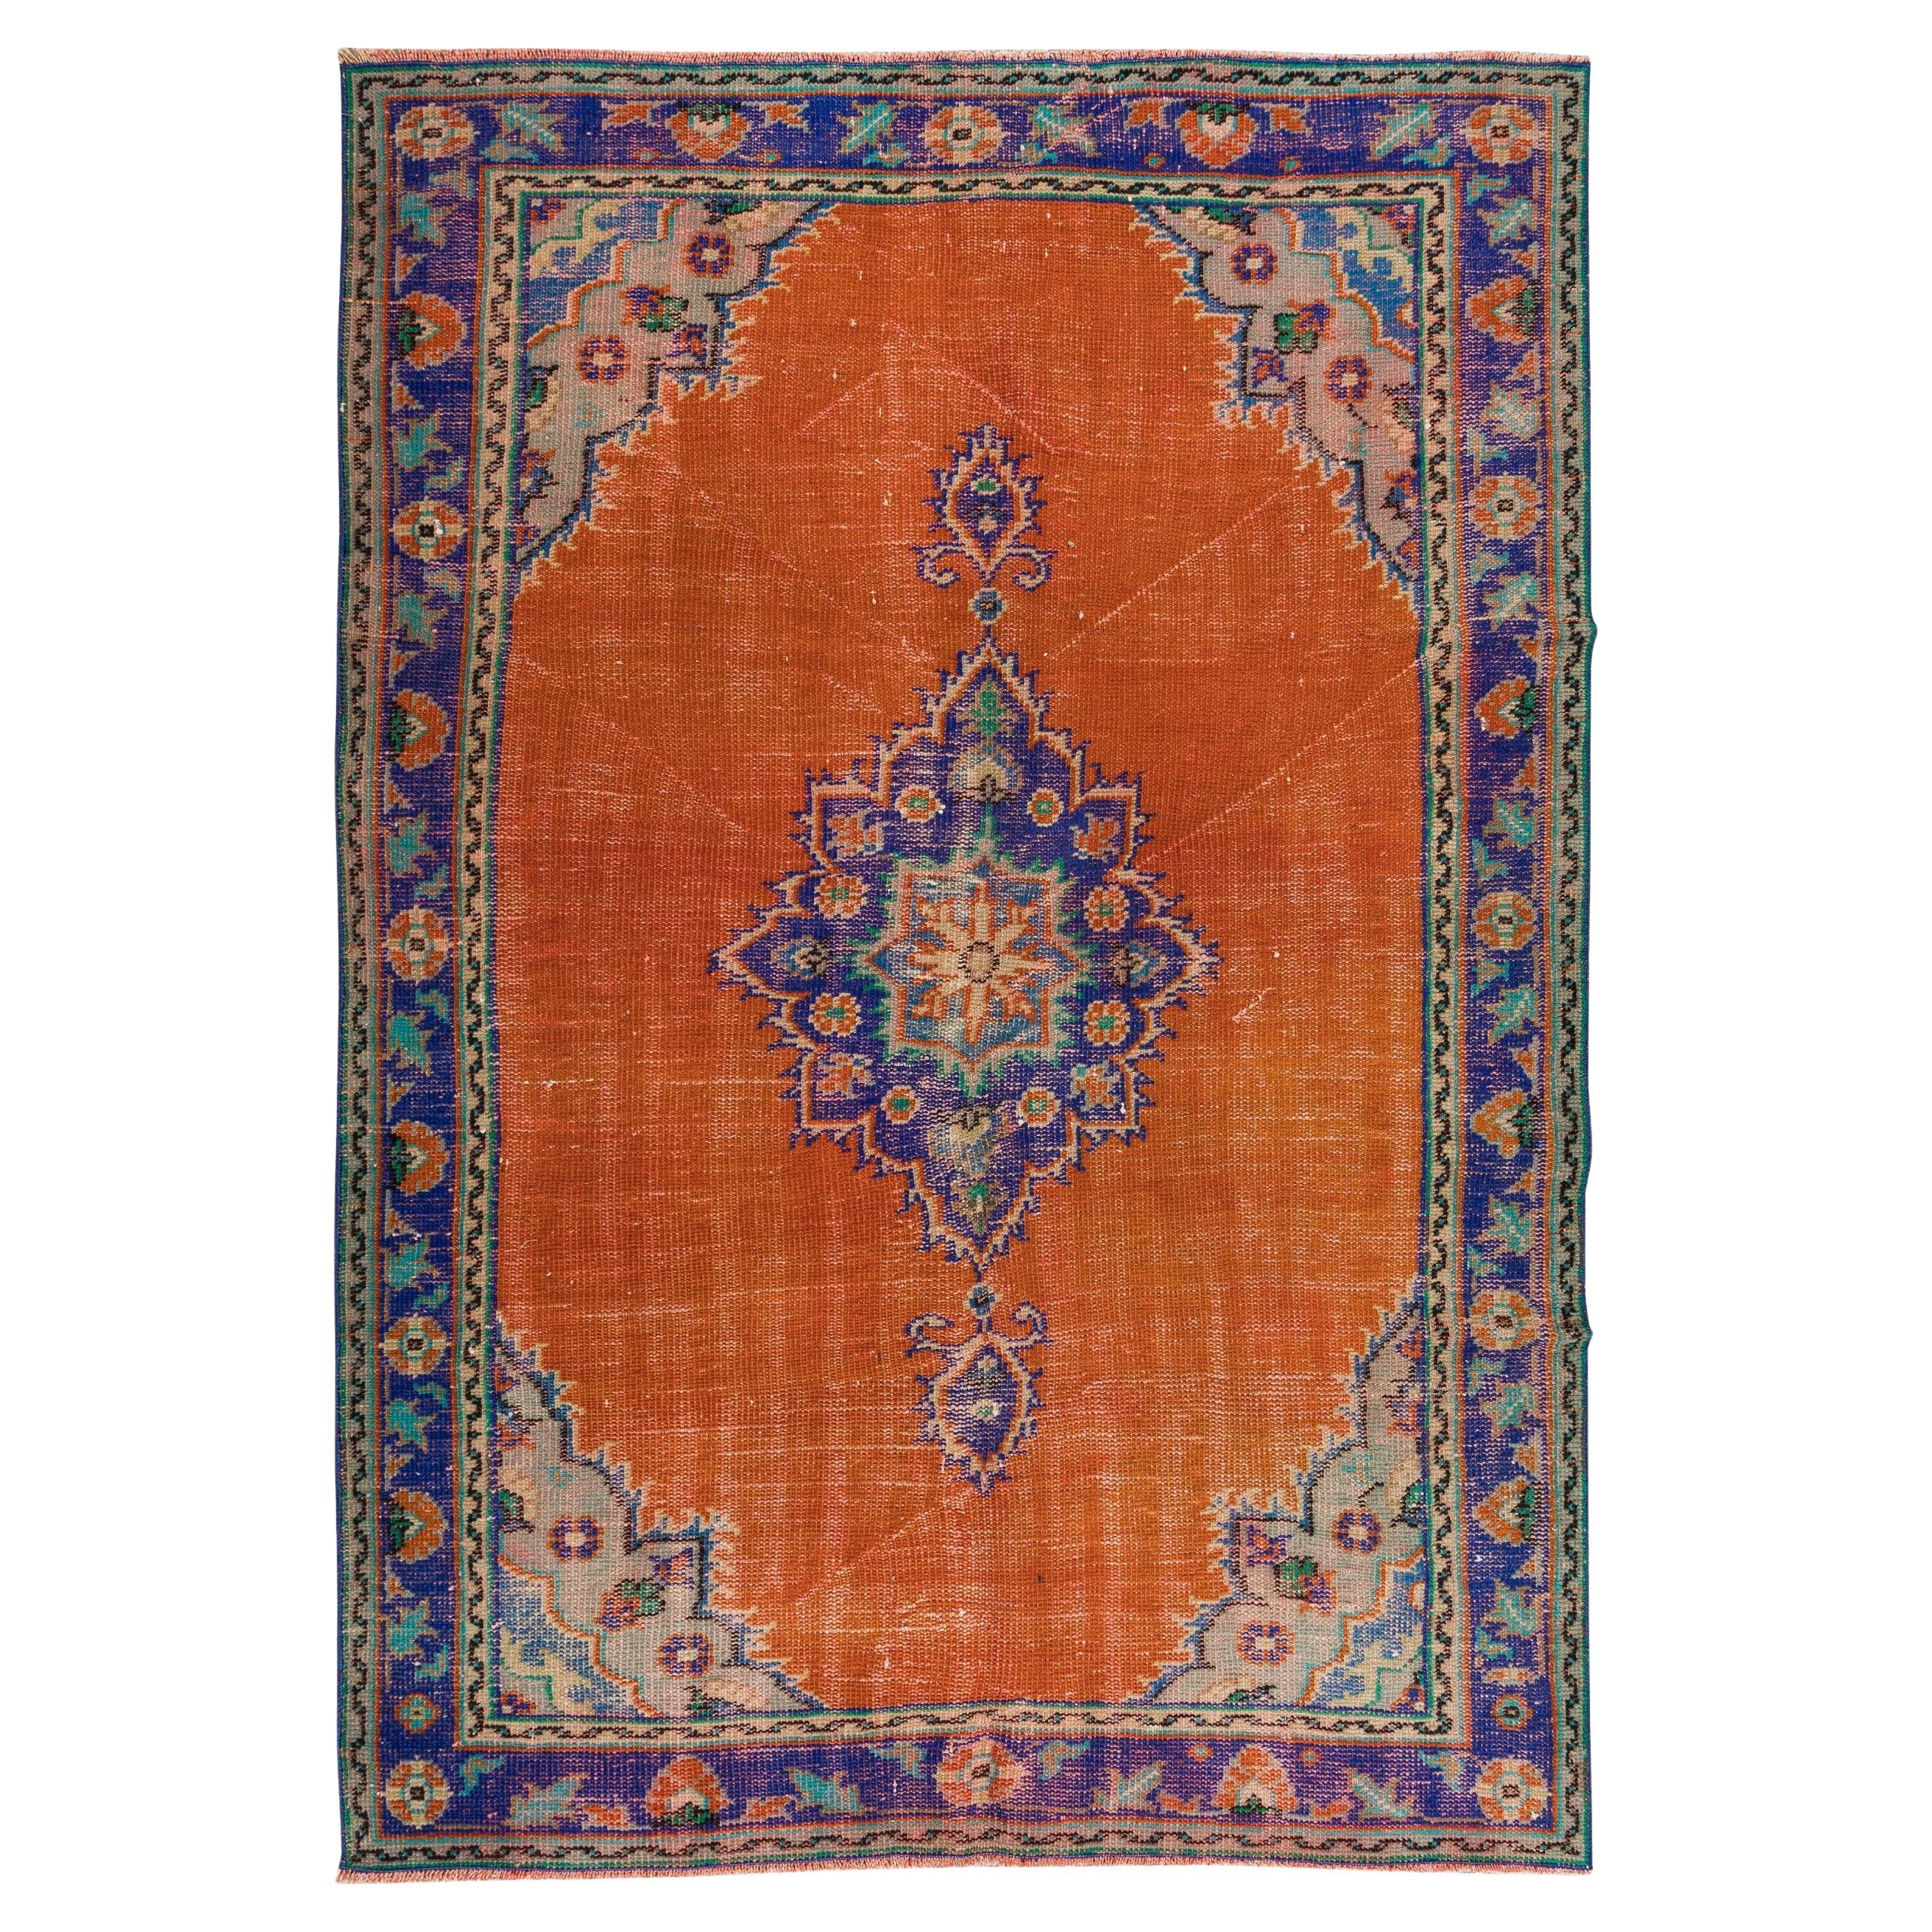 Handgeknüpfter türkischer Vintage-Teppich in gebranntem Orange, Lila, Blau und Grün, 5,5x7.9 Ft